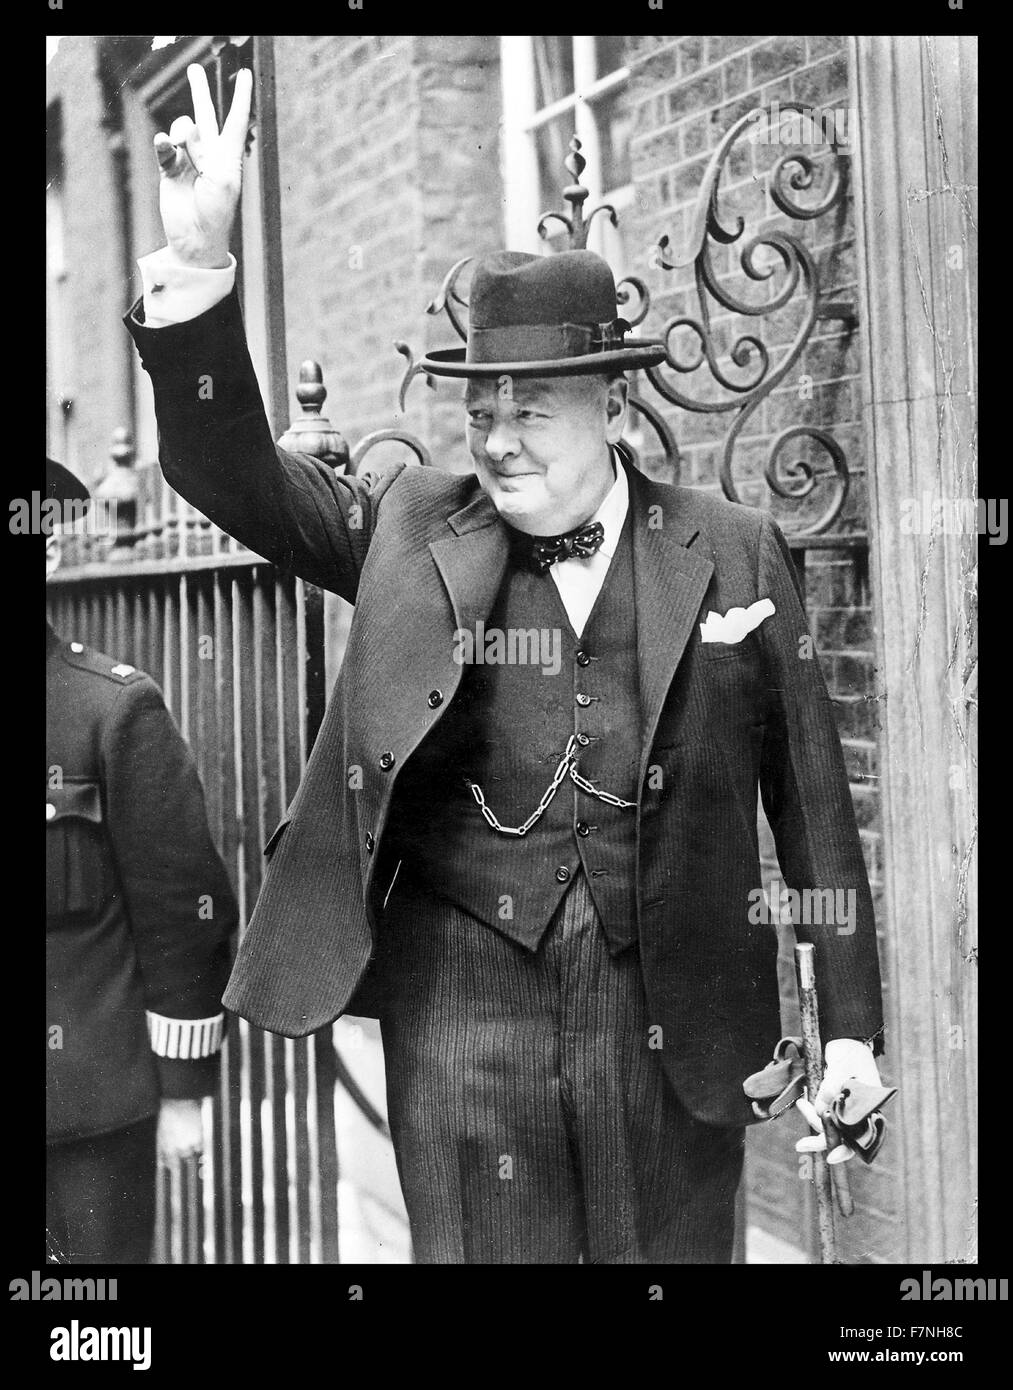 Fotografieren von Winston Churchill (1874-1965), britischer Politiker, Premierminister des Vereinigten Königreichs war. Datiert 1943 Stockfoto